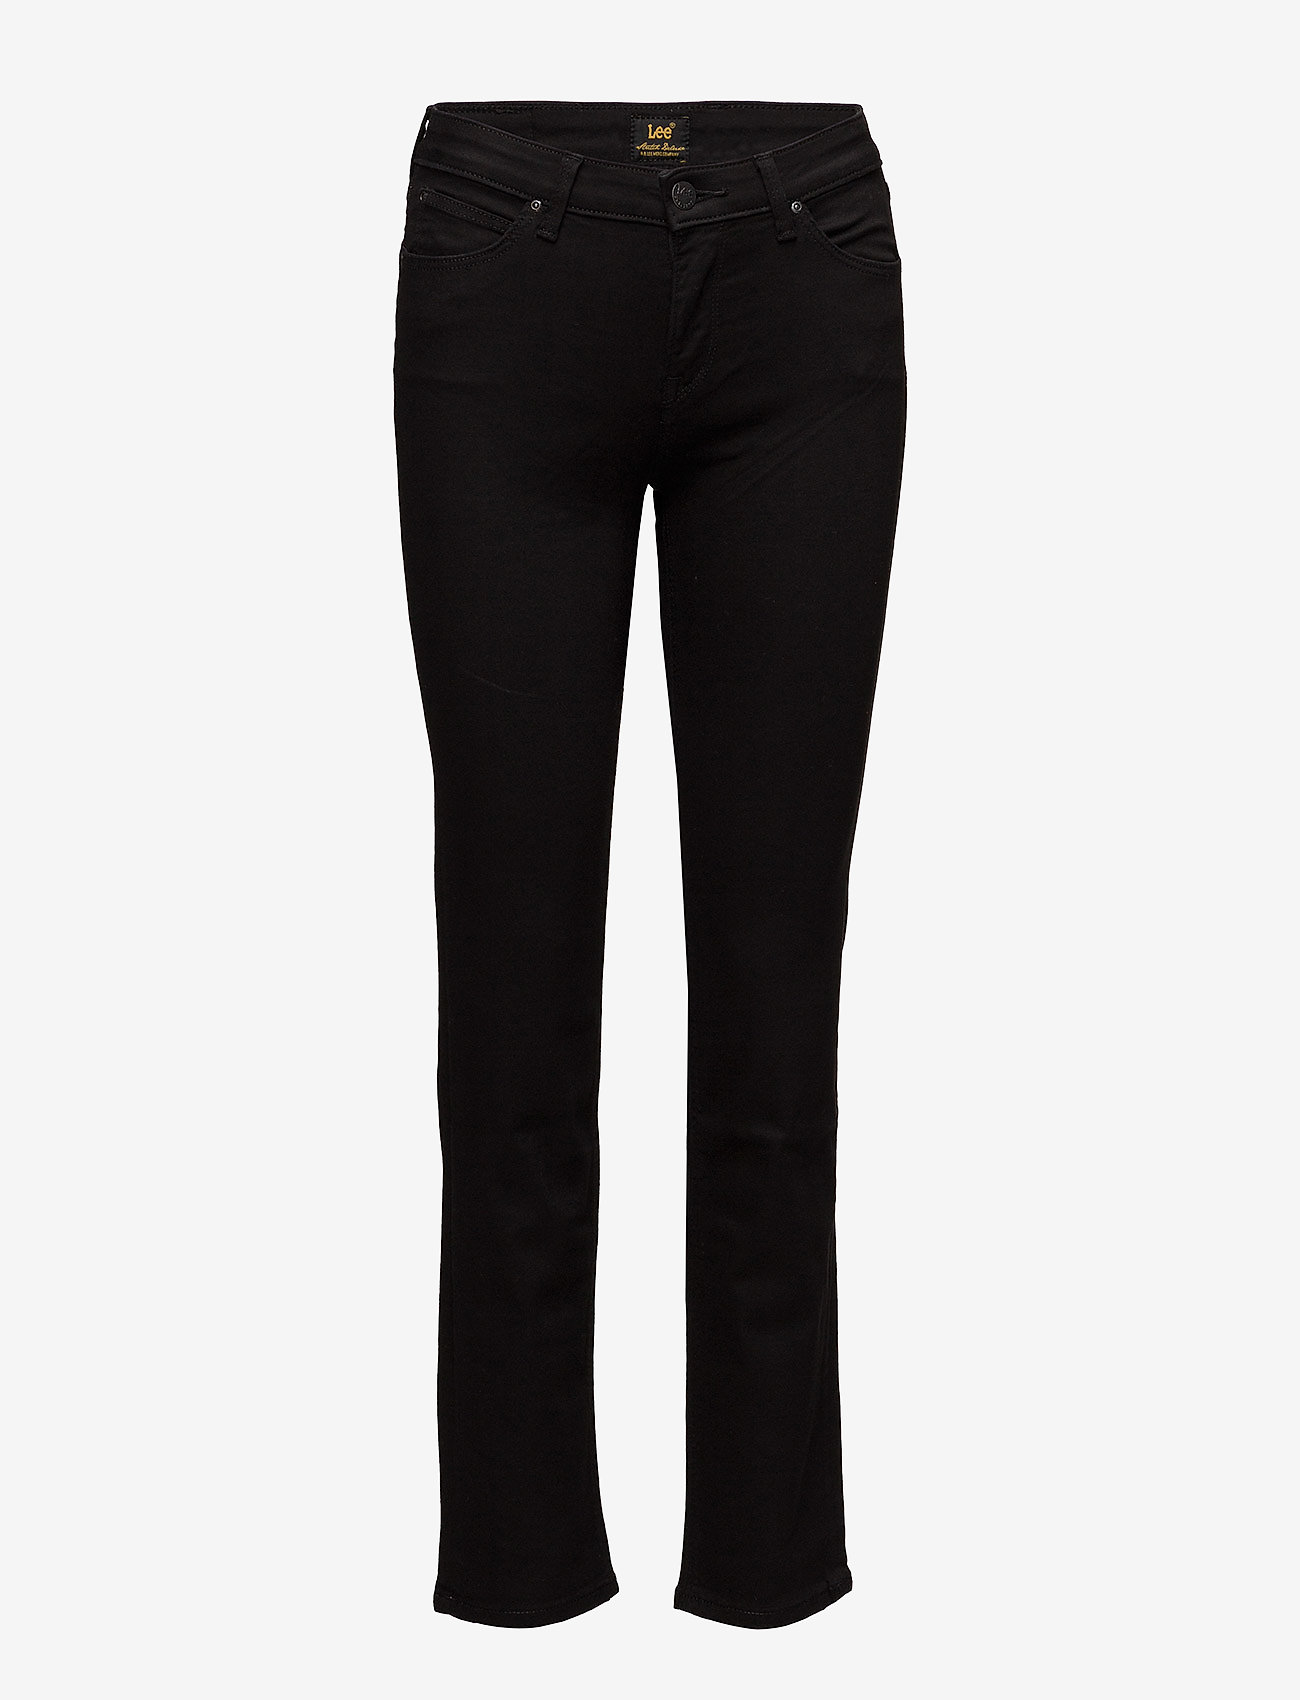 Lee Jeans - Marion Straight - tiesaus kirpimo džinsai - black rinse - 0